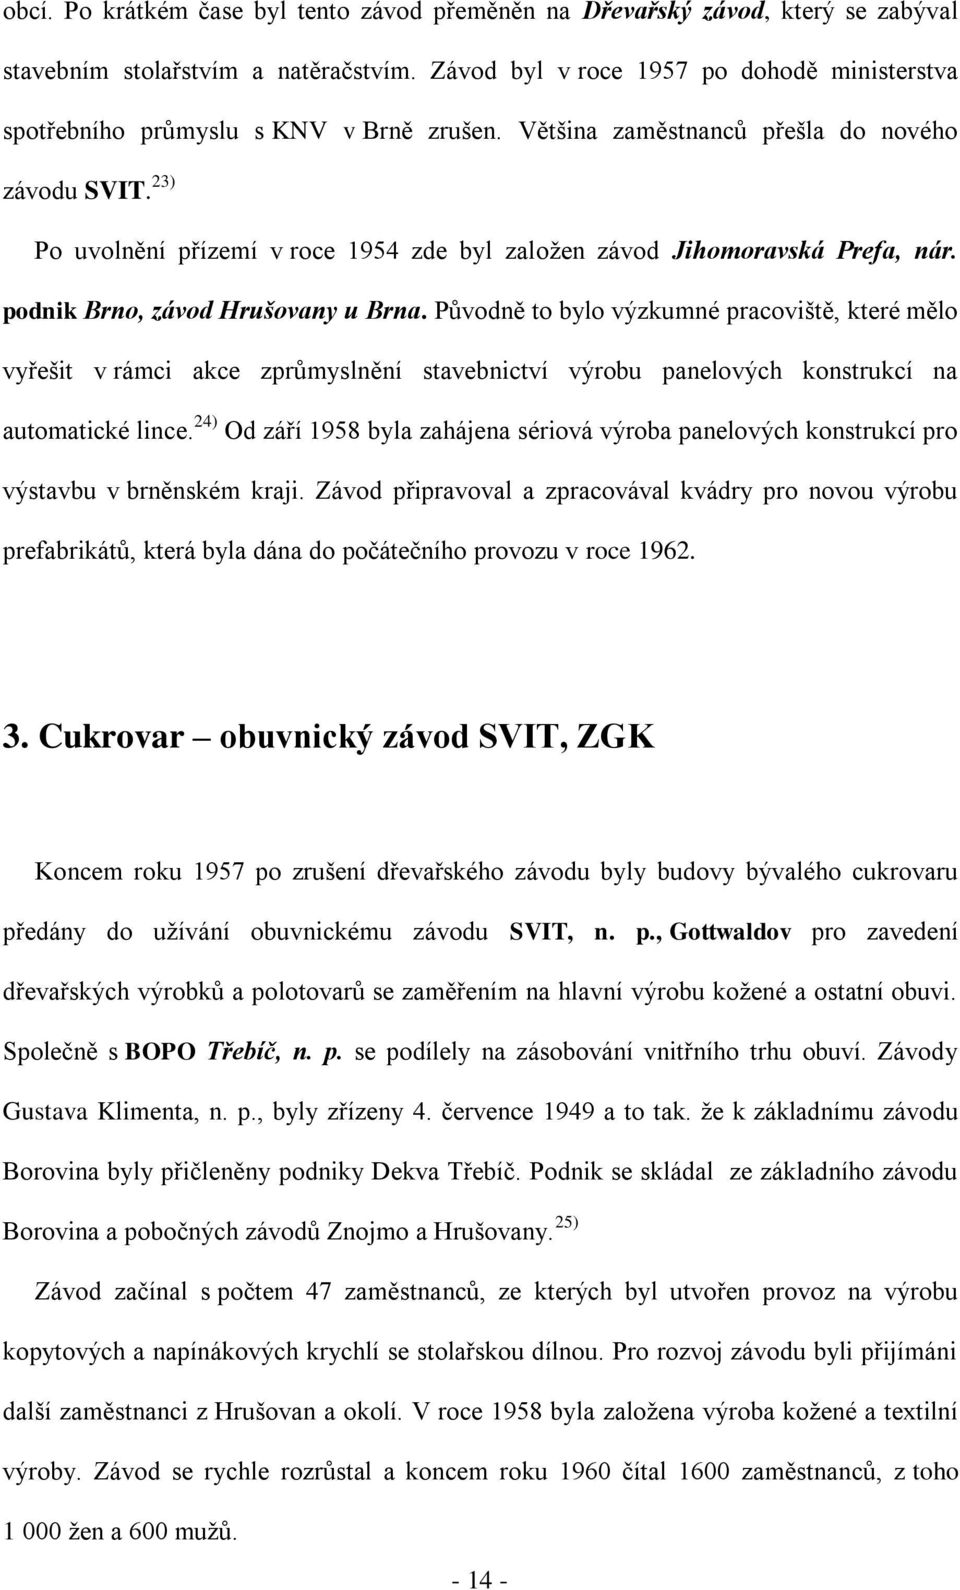 Cukrovar v Hrušovanech u Brna - PDF Stažení zdarma